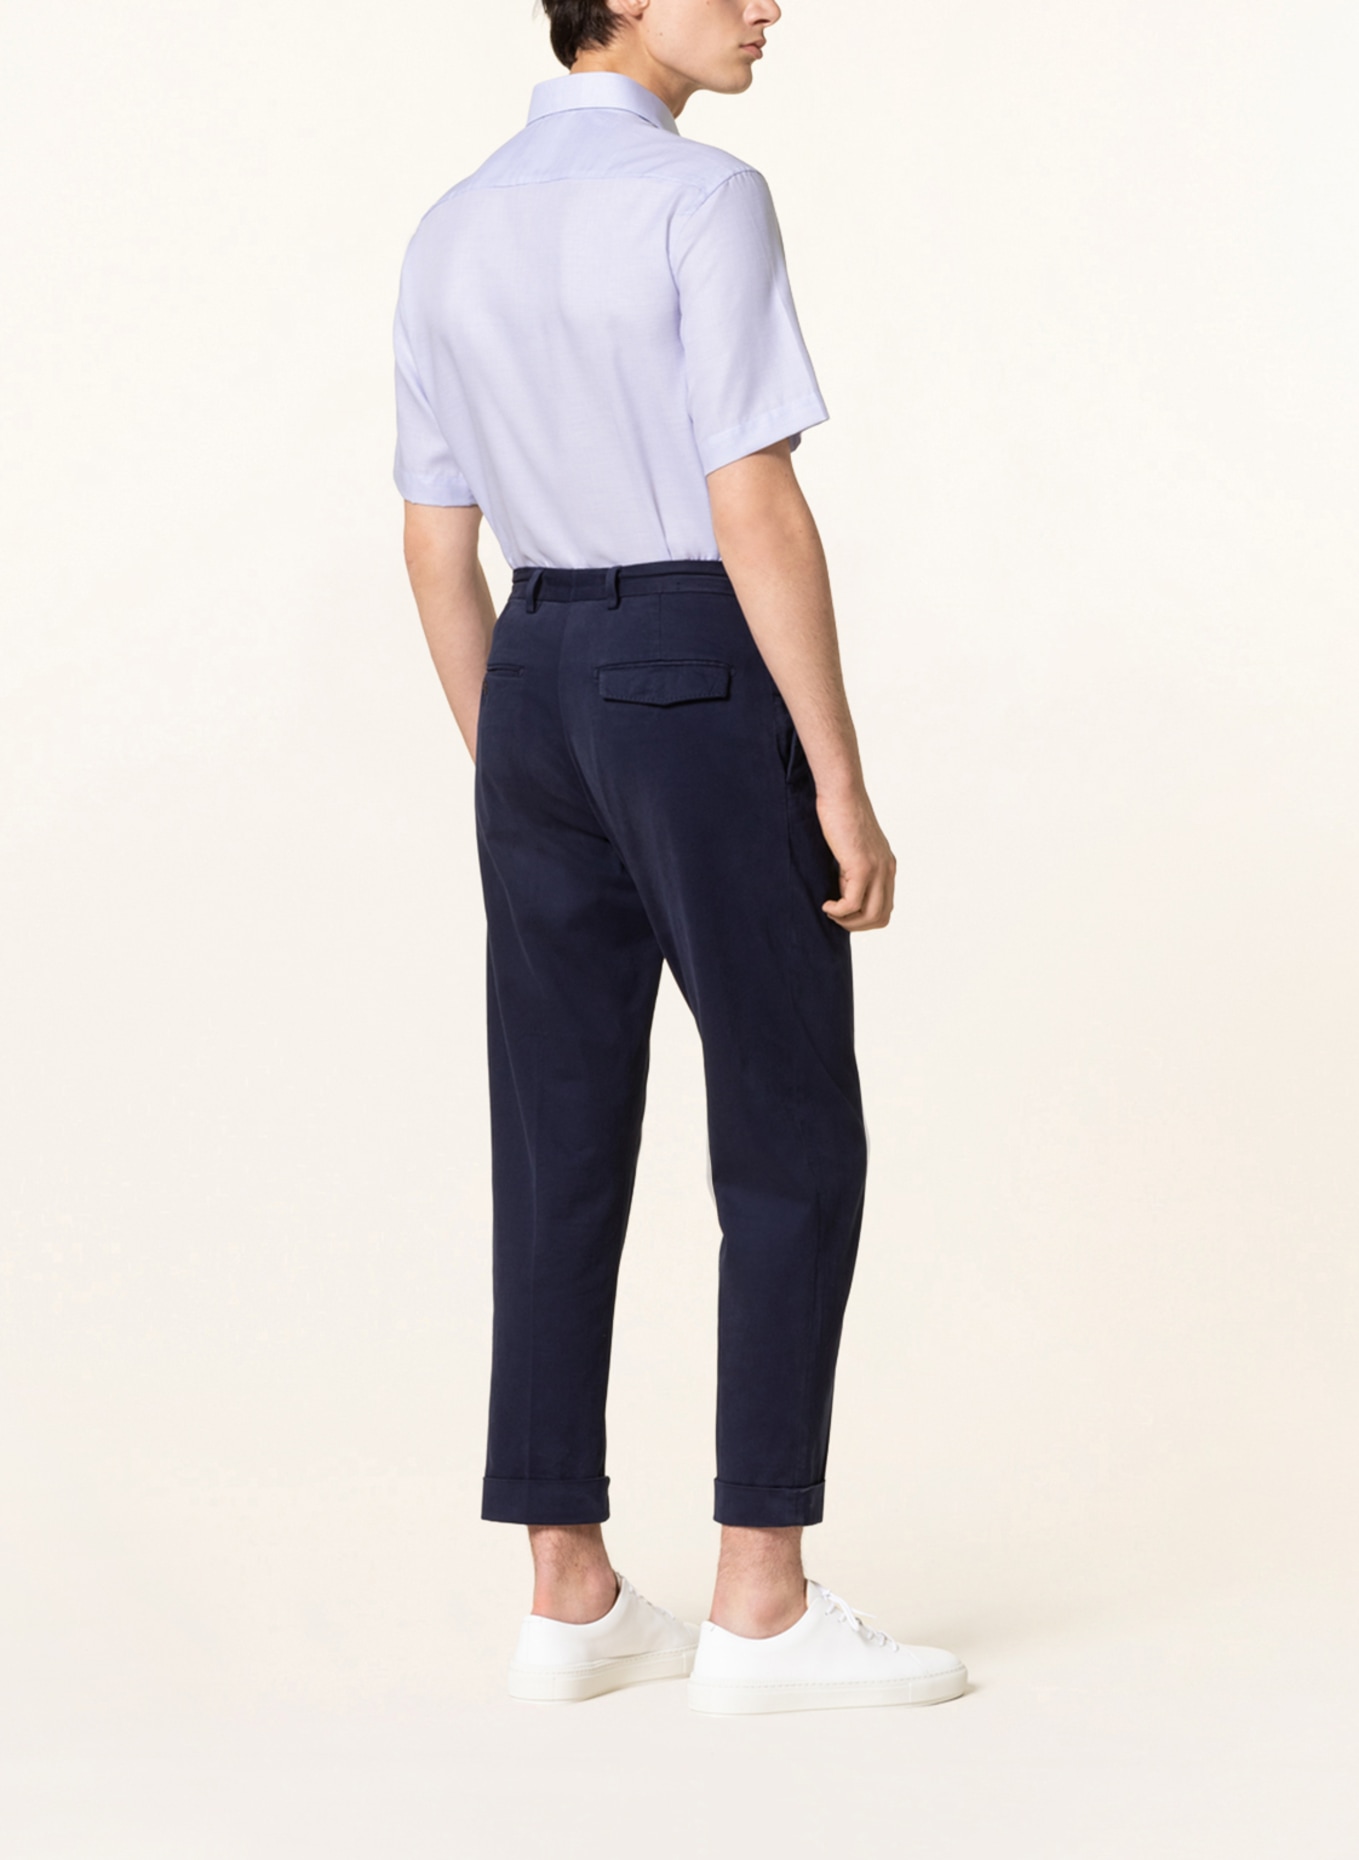 ETERNA Short-sleeved shirt modern fit, Color: LIGHT BLUE (Image 3)